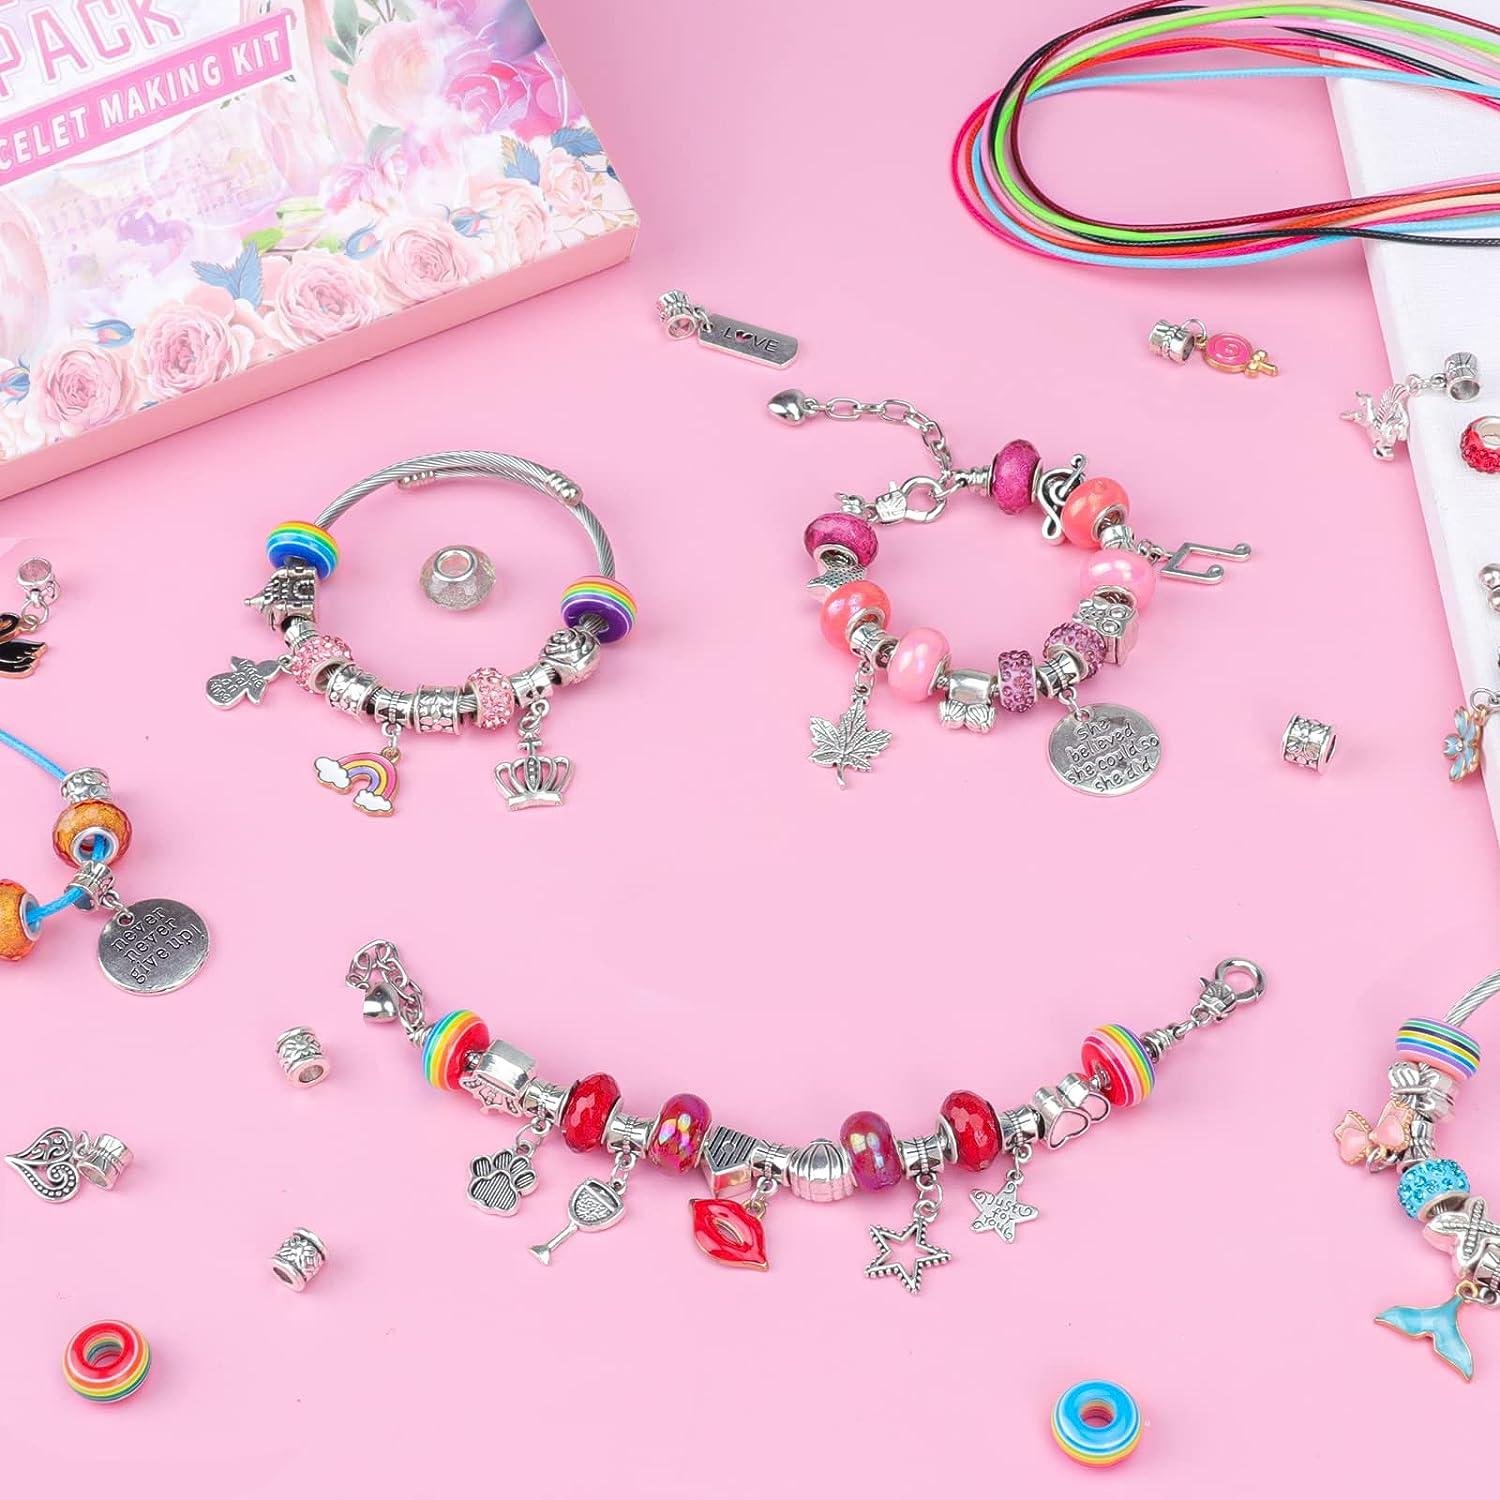 Nouvati Charm Bracelet Making Kit for Girls Aged 5+ in Inspiring Jewelry  Box – 250 Crystal Beads, Letter Beads, Bracelet Charms, Elastic Strings